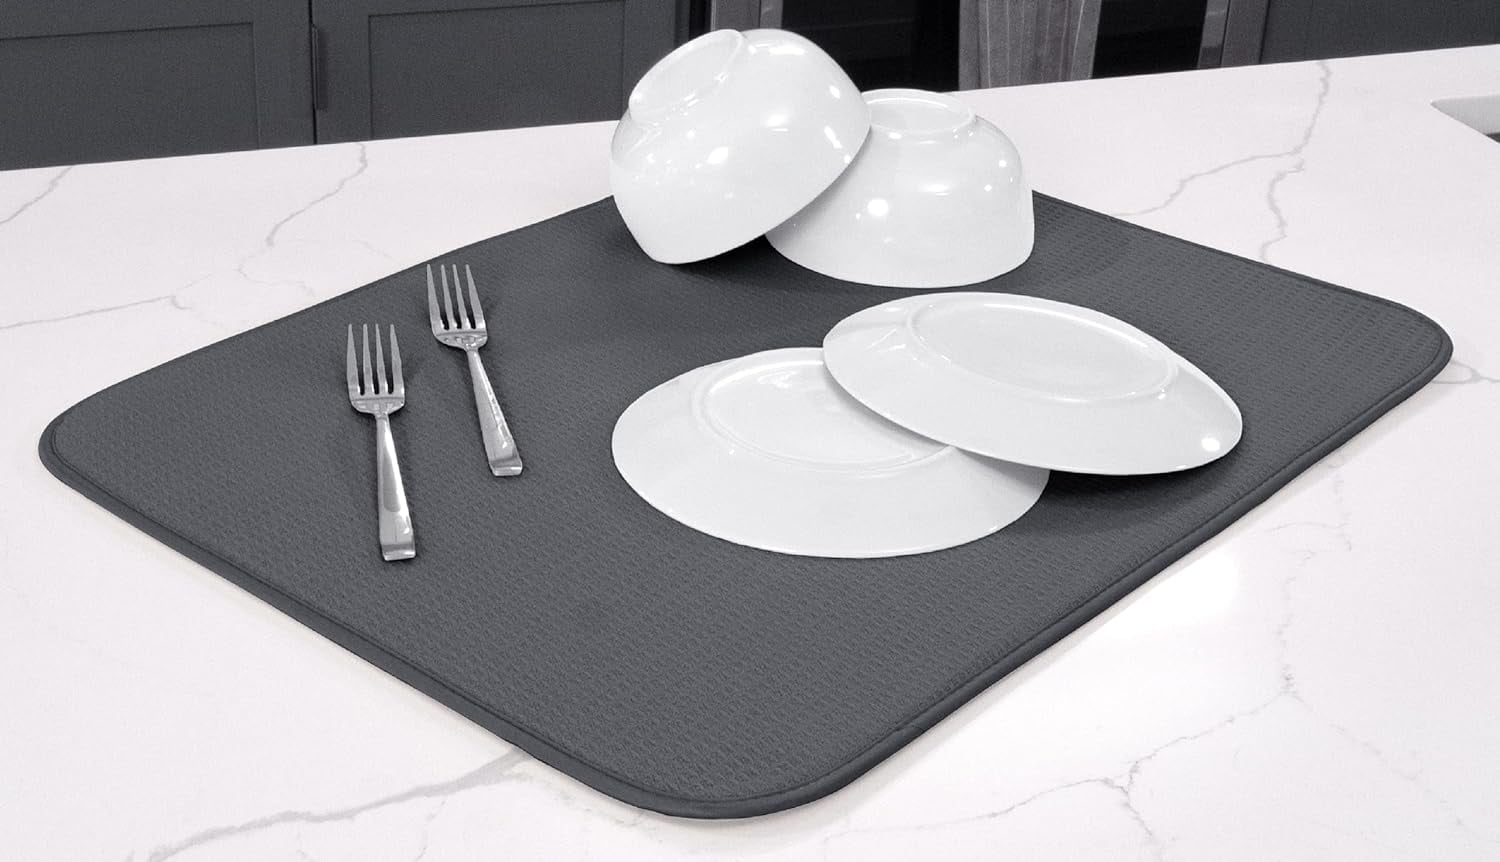 XXL Dish Mat 24 x 17 (LARGEST MAT) Microfiber Dish Drying Mat, Super  absorbent by Bellemain (Gray) - Bellemain